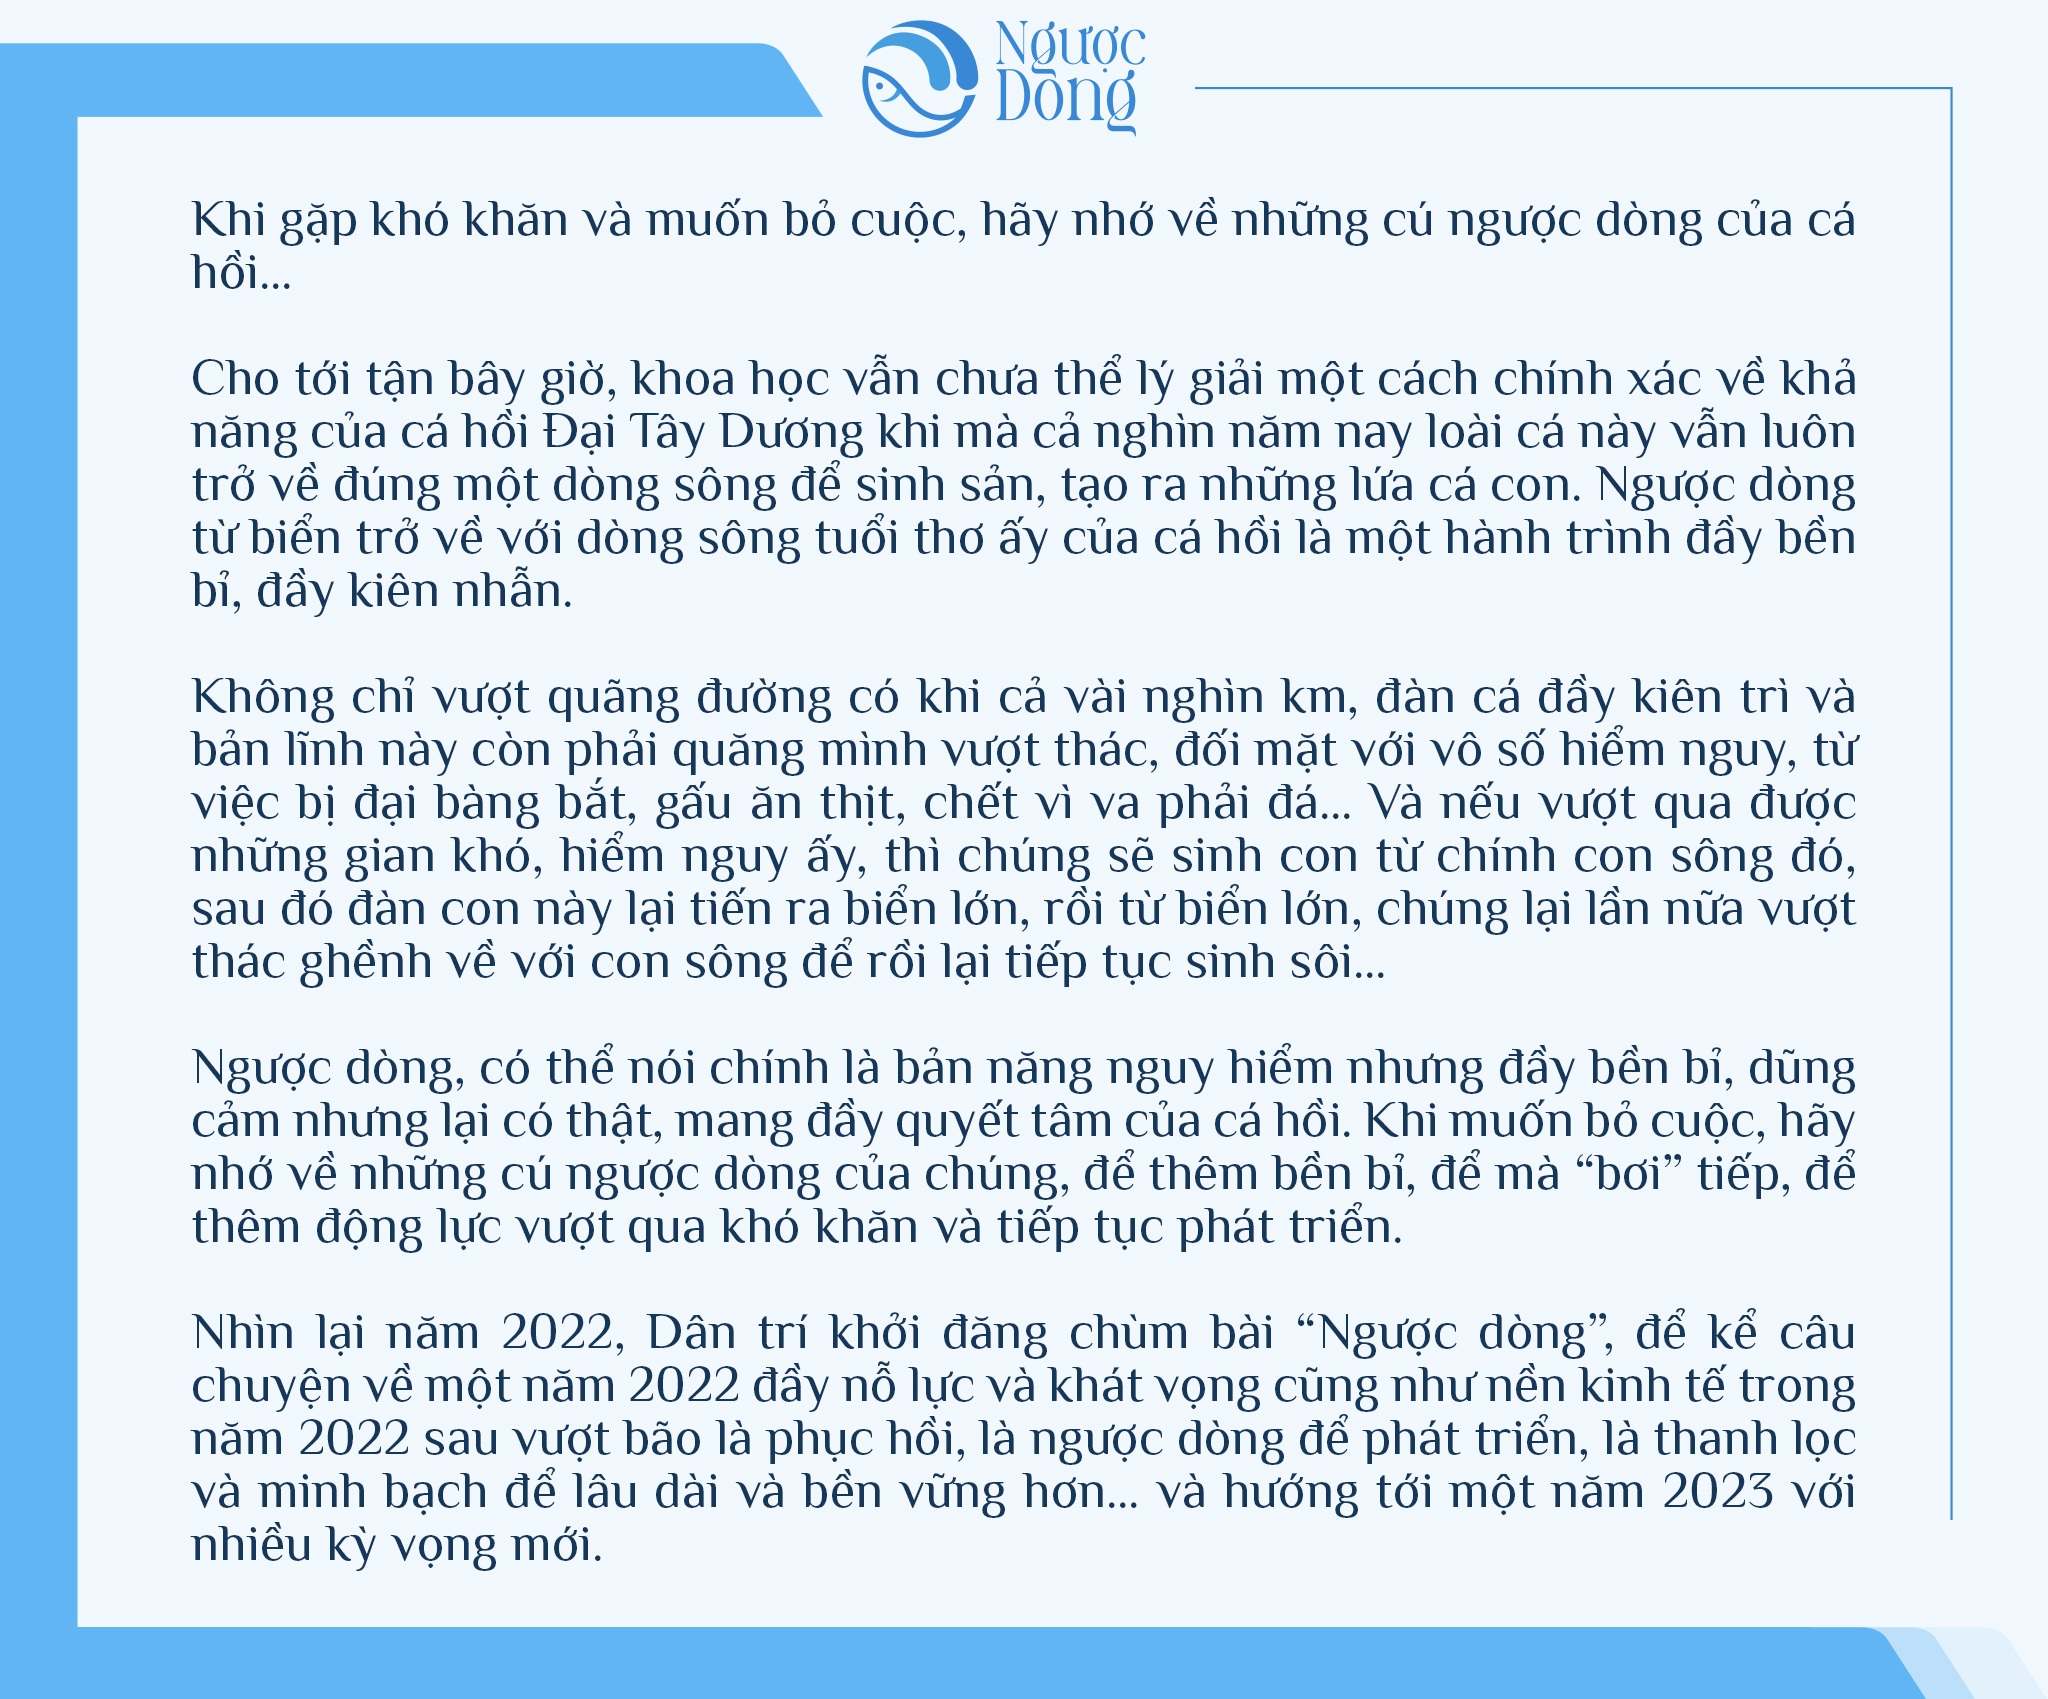 Kinh tế Việt Nam 2022, chuyện lội ngược dòng và chìa khóa tăng trưởng 2023 - 1